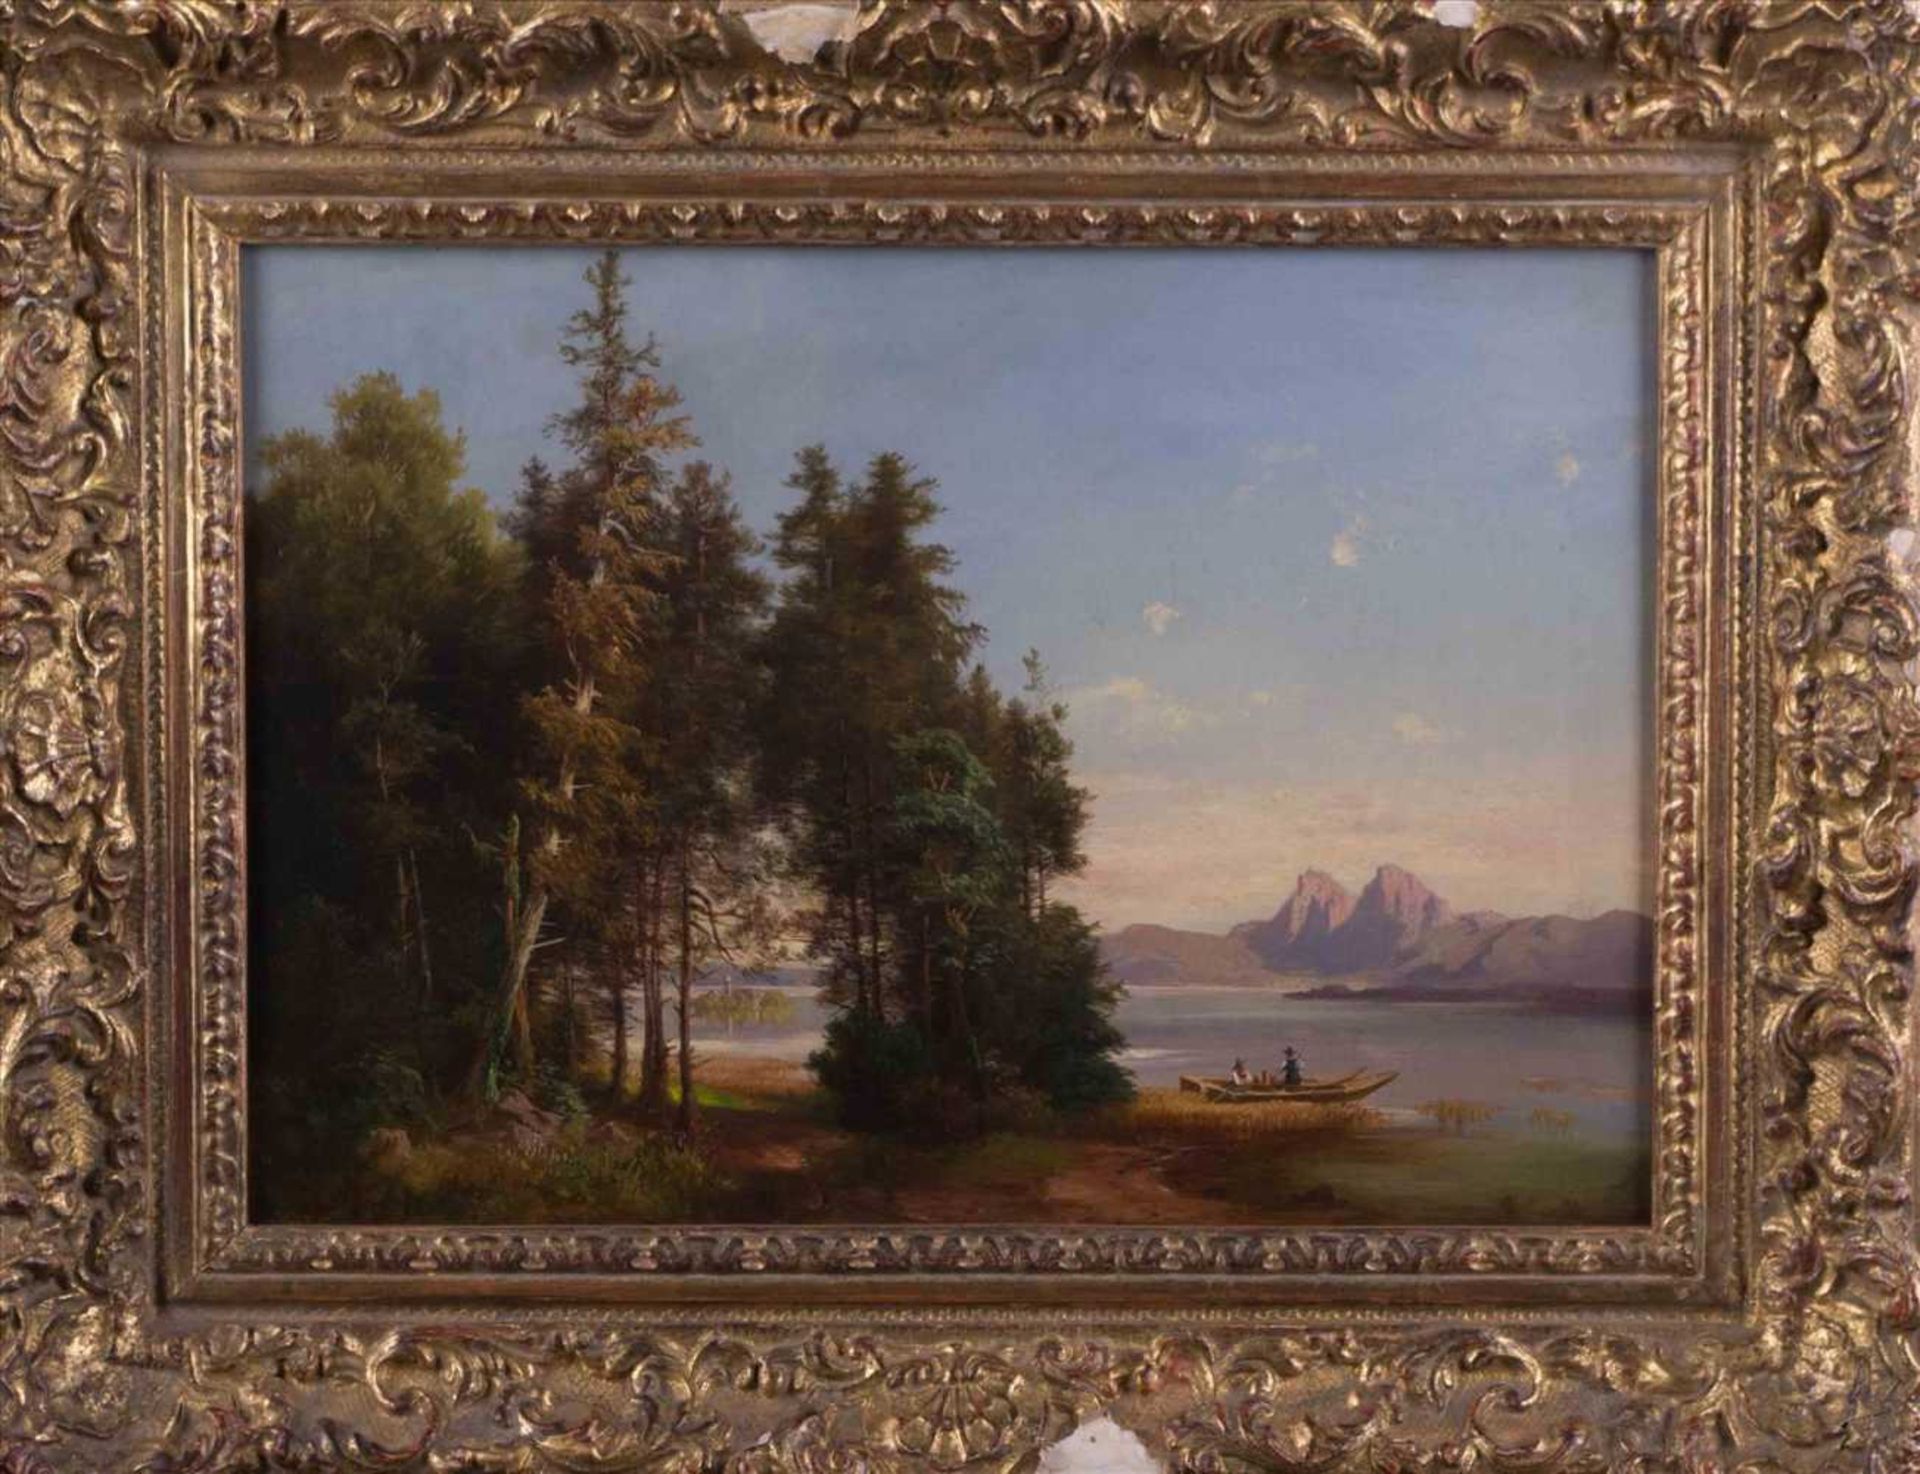 Anna PLOMMER (1836-1890) "Am Ufer eines Gebirgsees" Gemälde Öl/Leinwand(doubliert), 32 cm x 48 cm, - Bild 2 aus 10